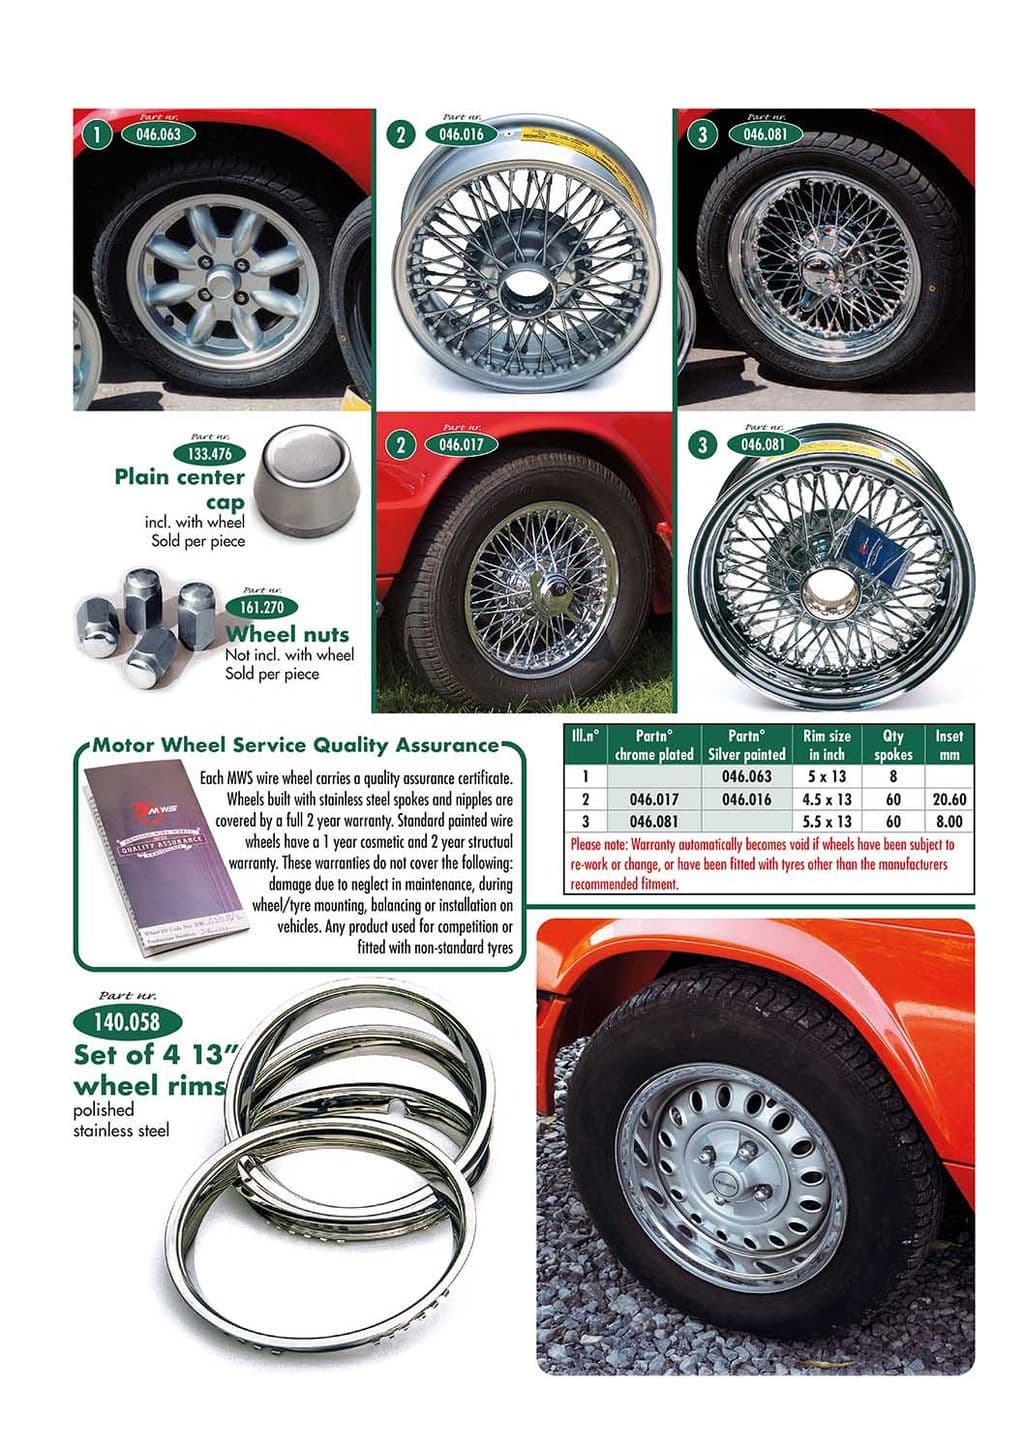 Wheels & accessories - drátěná kola & příslušenství - Auto kola, odpružení & řízení - Triumph GT6 MKI-III 1966-1973 - Wheels & accessories - 1